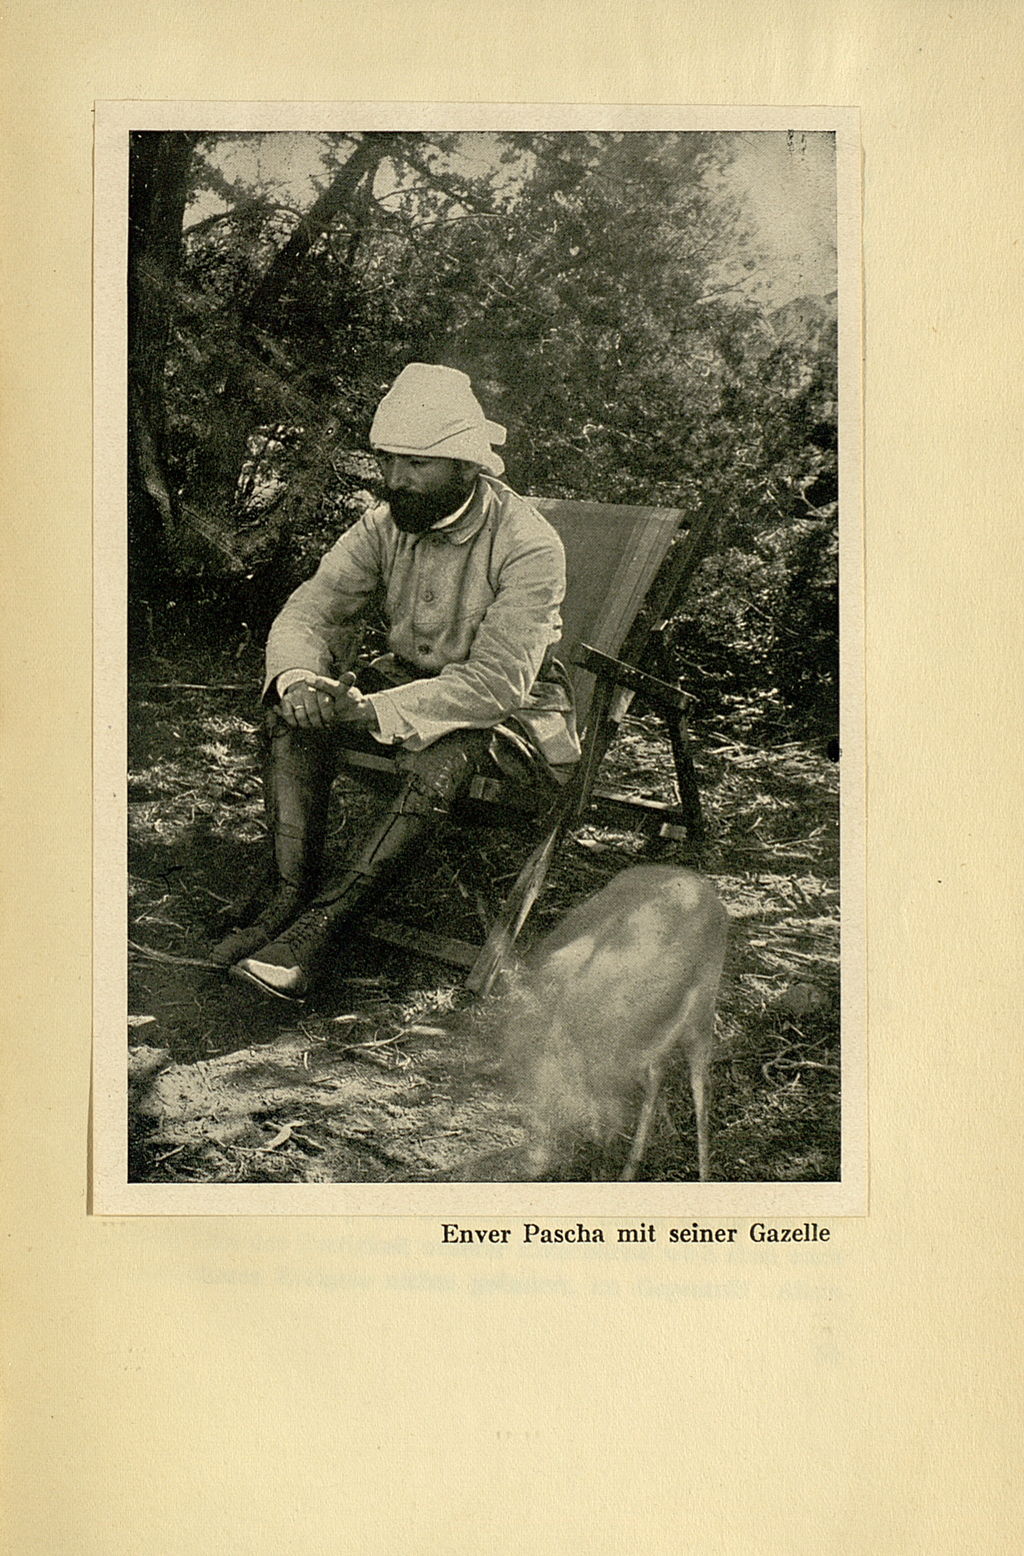 Die Abbildung zeigt eine Fotografie von Enver Pascha. Er sitzt in einem Klappstuhl im Schatten mehrerer Pflanzen. Neben ihm ist eine kleine Gazelle zu sehen. Es handelt sich um eine Schwarz-Weiß Aufnahme von 1918.   